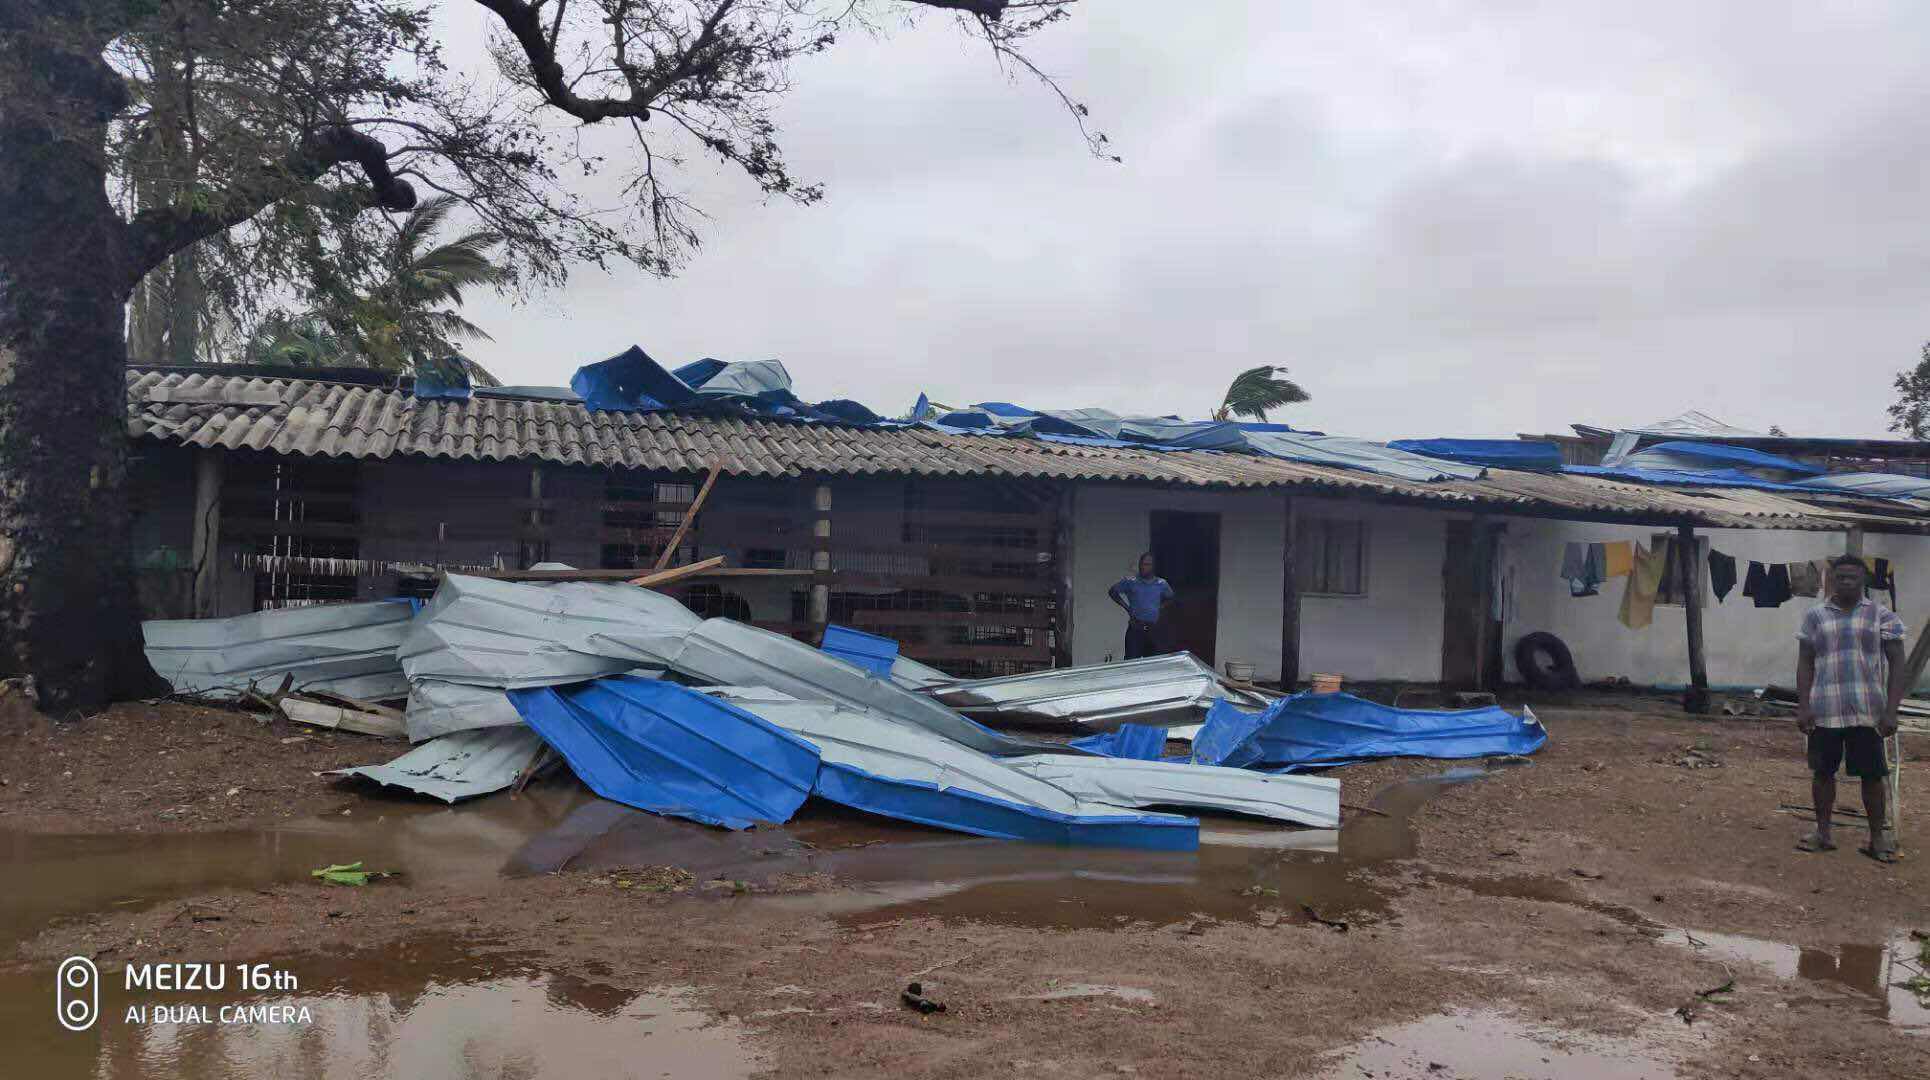  莫桑比克貝拉辦事處遭颶風重創受災      公司上下積極有序應對開展災后自救